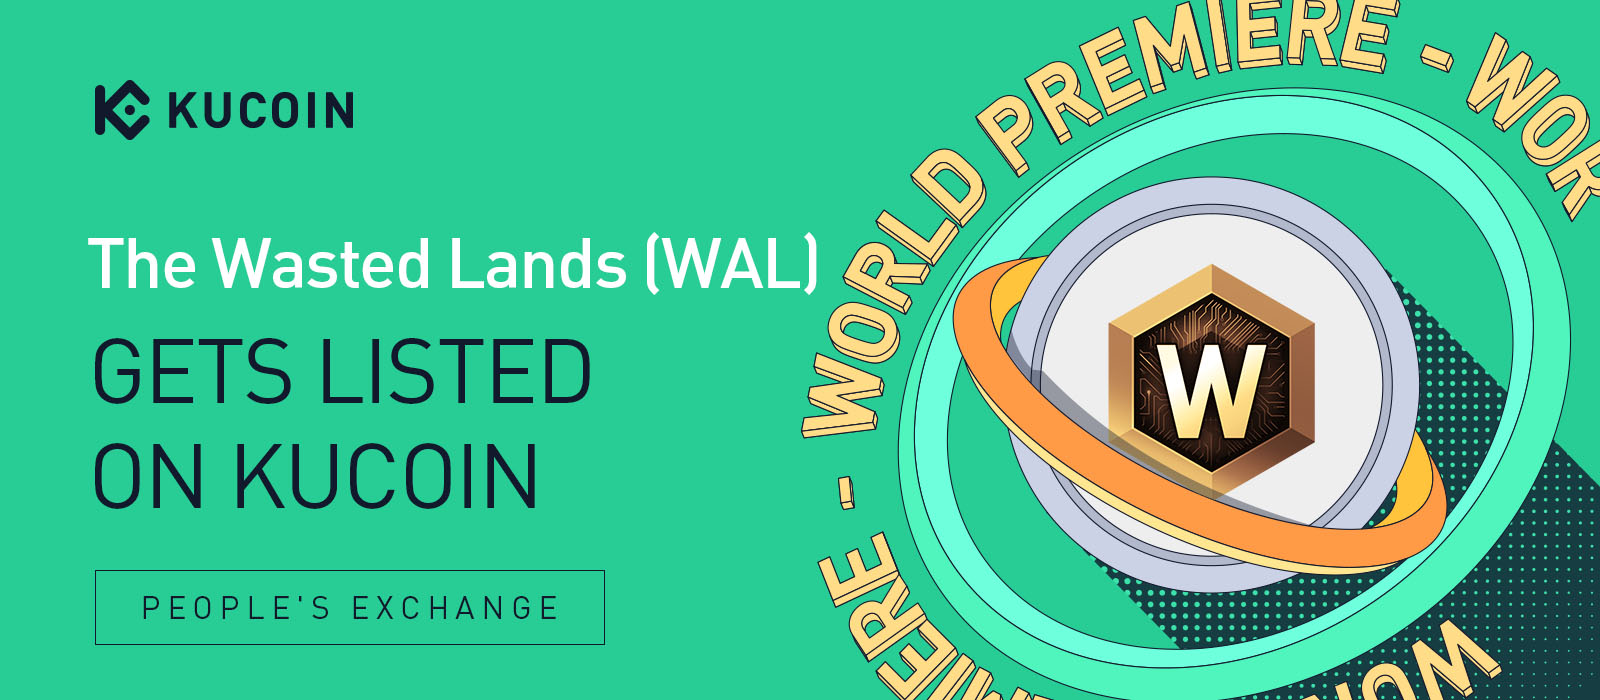 The Wastes Lands (WAL)